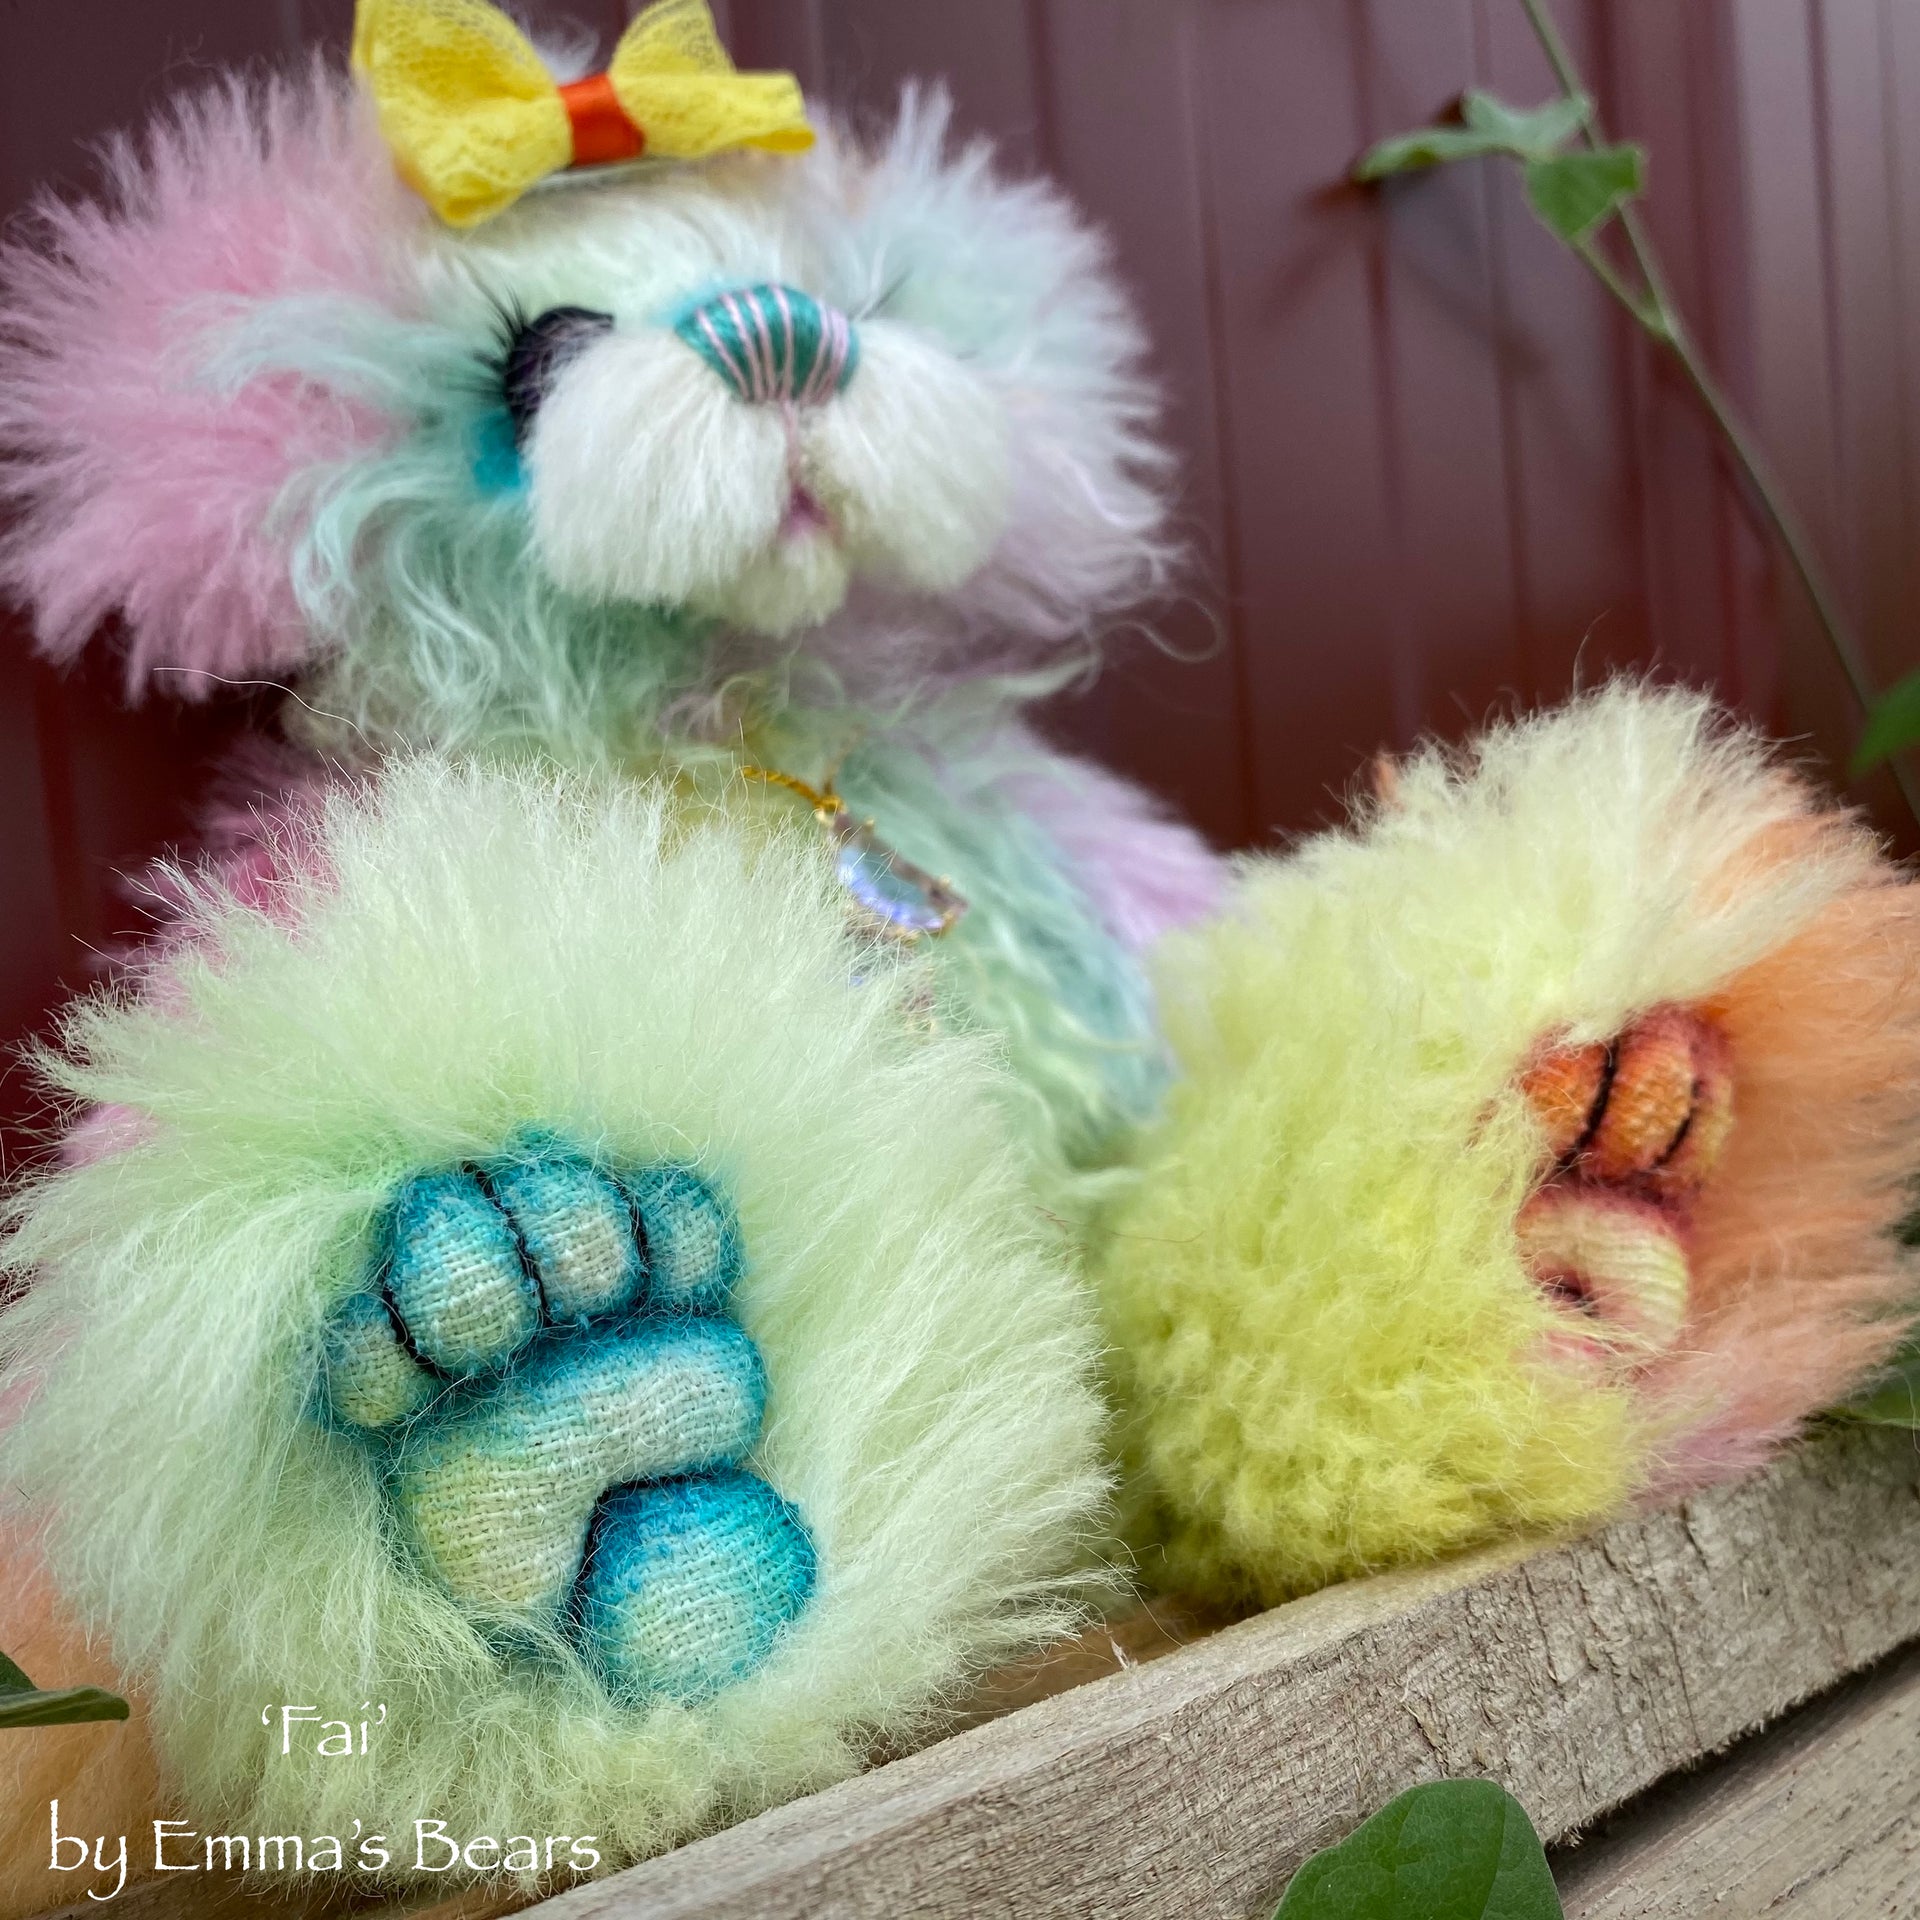 Fai - 9" Hand Dyed Mohair Artist Bear by Emma's Bears - OOAK